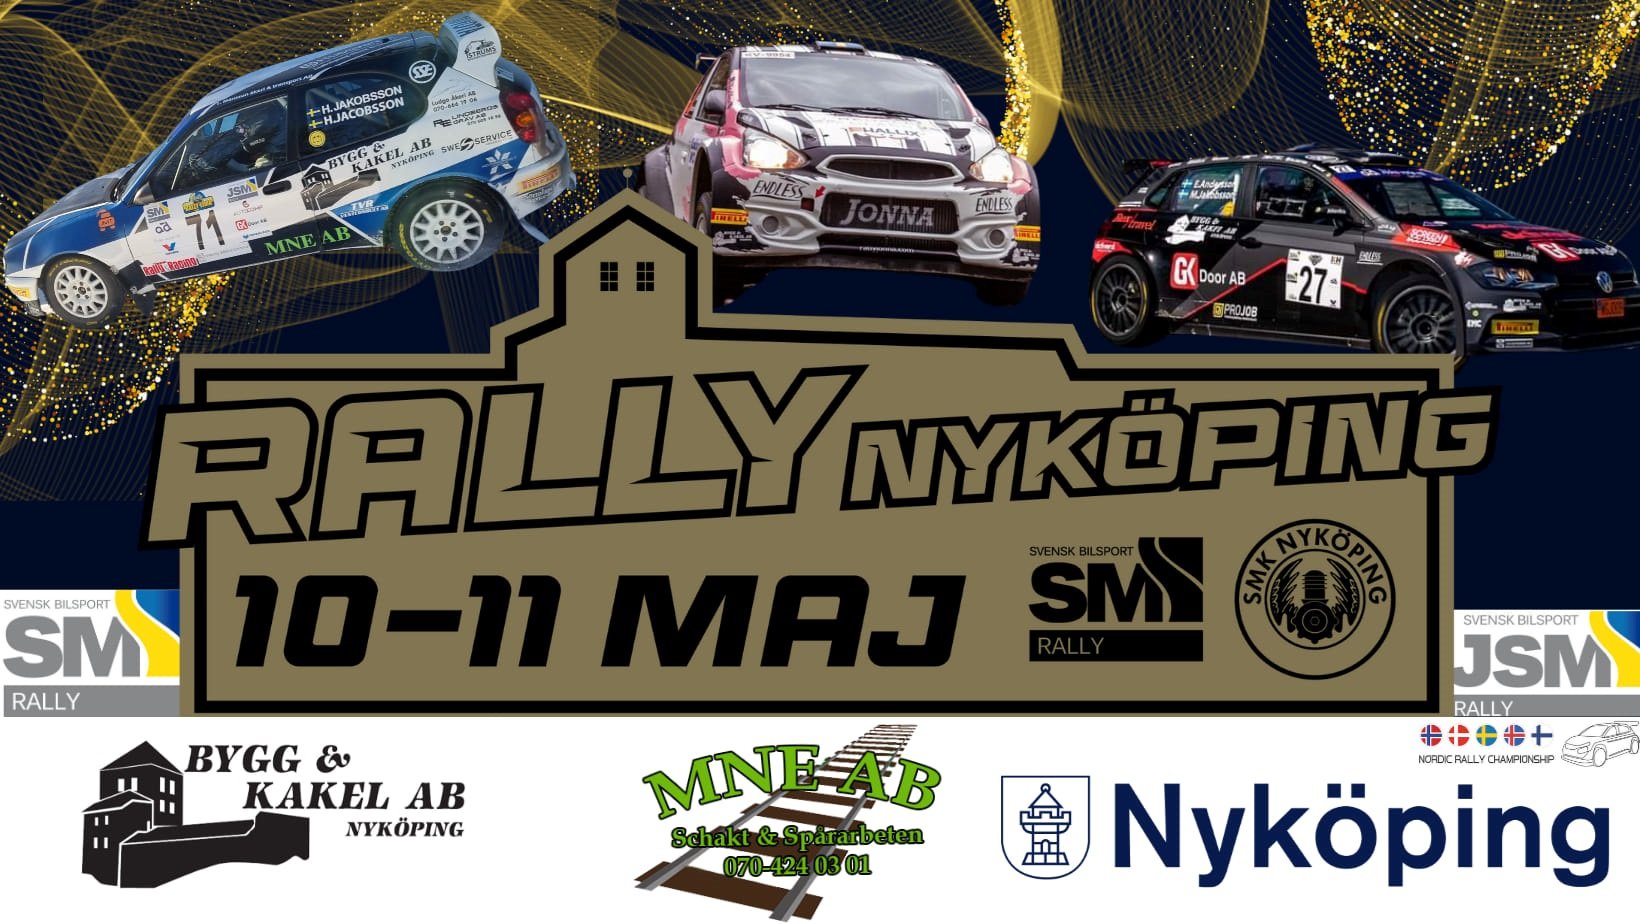 Tre rallybilar med texten Rally Nyköping 10-11 maj Nyköping